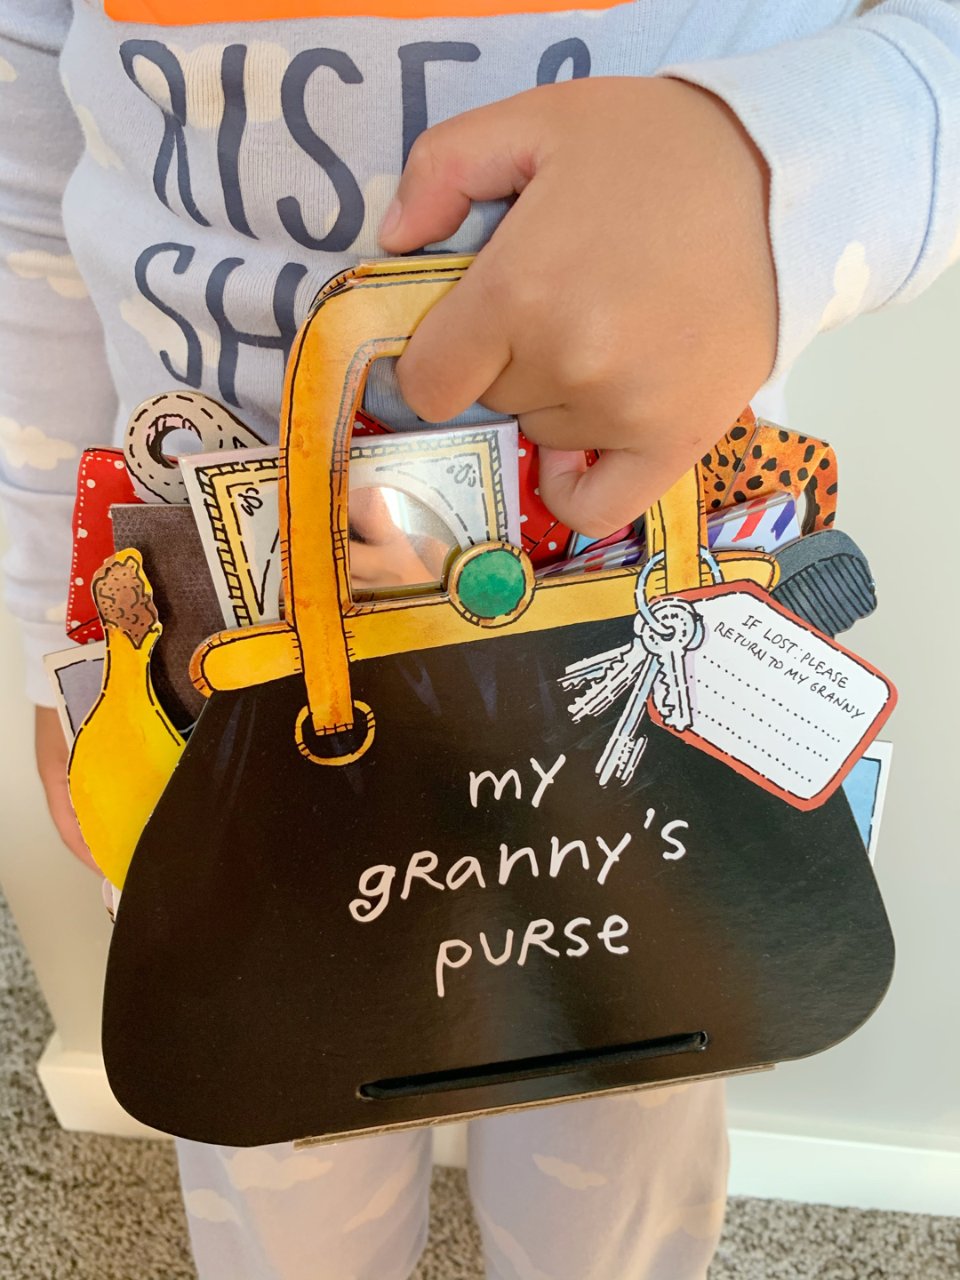 My granny’s purse机关书...